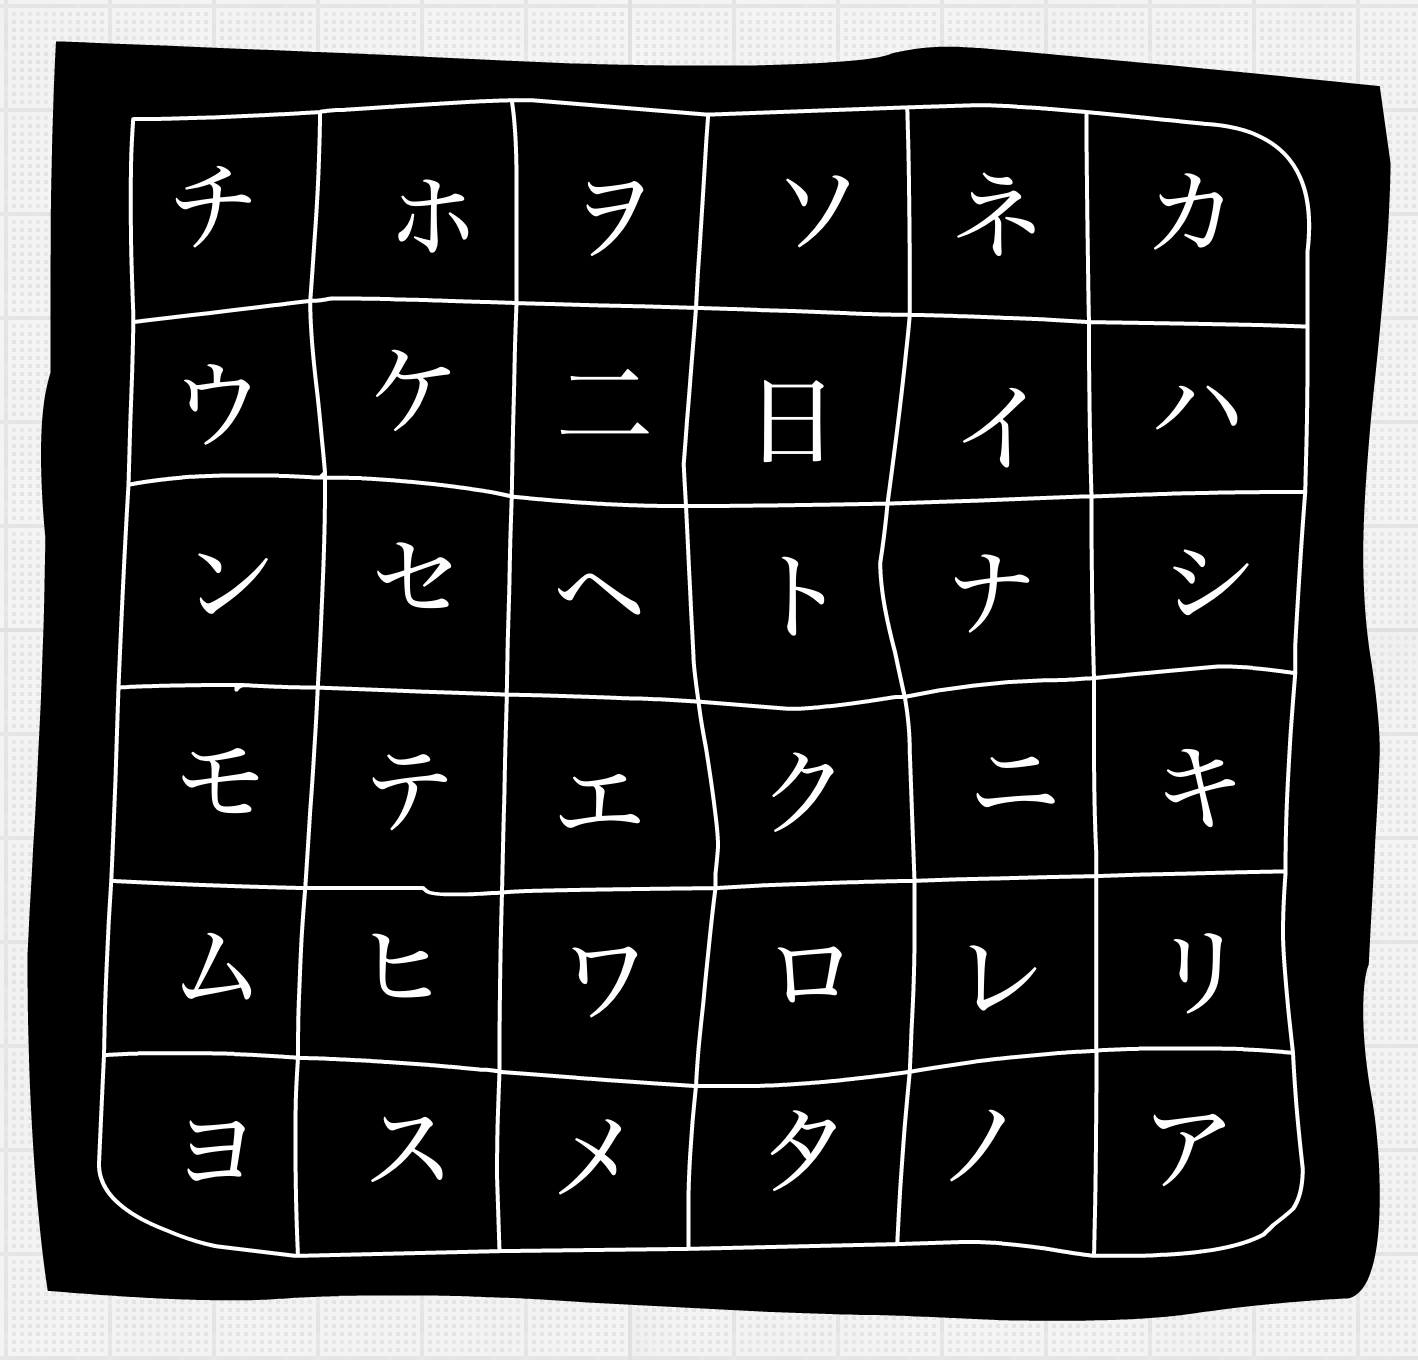 A grid of symbols